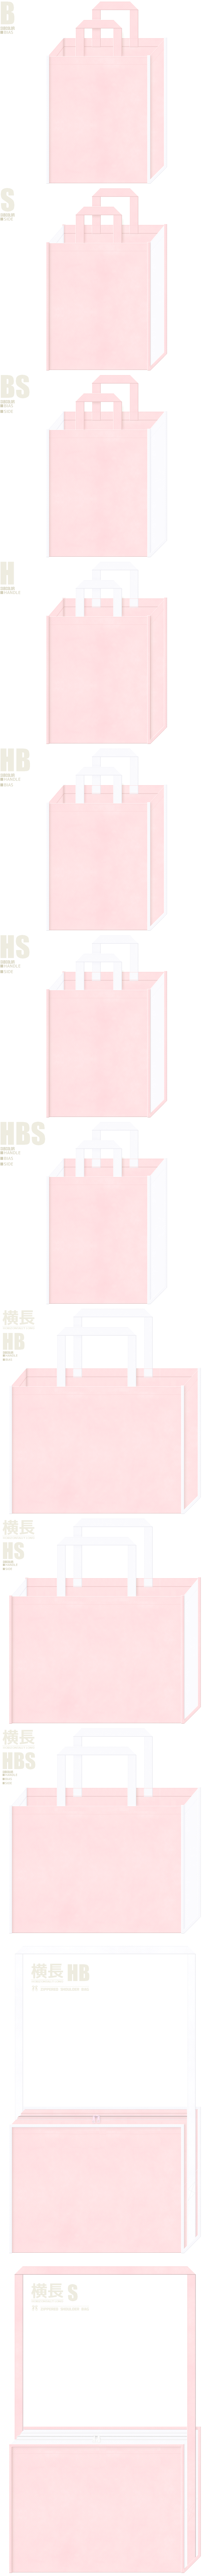 保育・福祉・介護・医療・うさぎ・白鳥・バレエ・ファンシー・パステルカラー・ガーリーデザインにお奨めの不織布バッグデザイン：桜色と白色の配色7パターン。